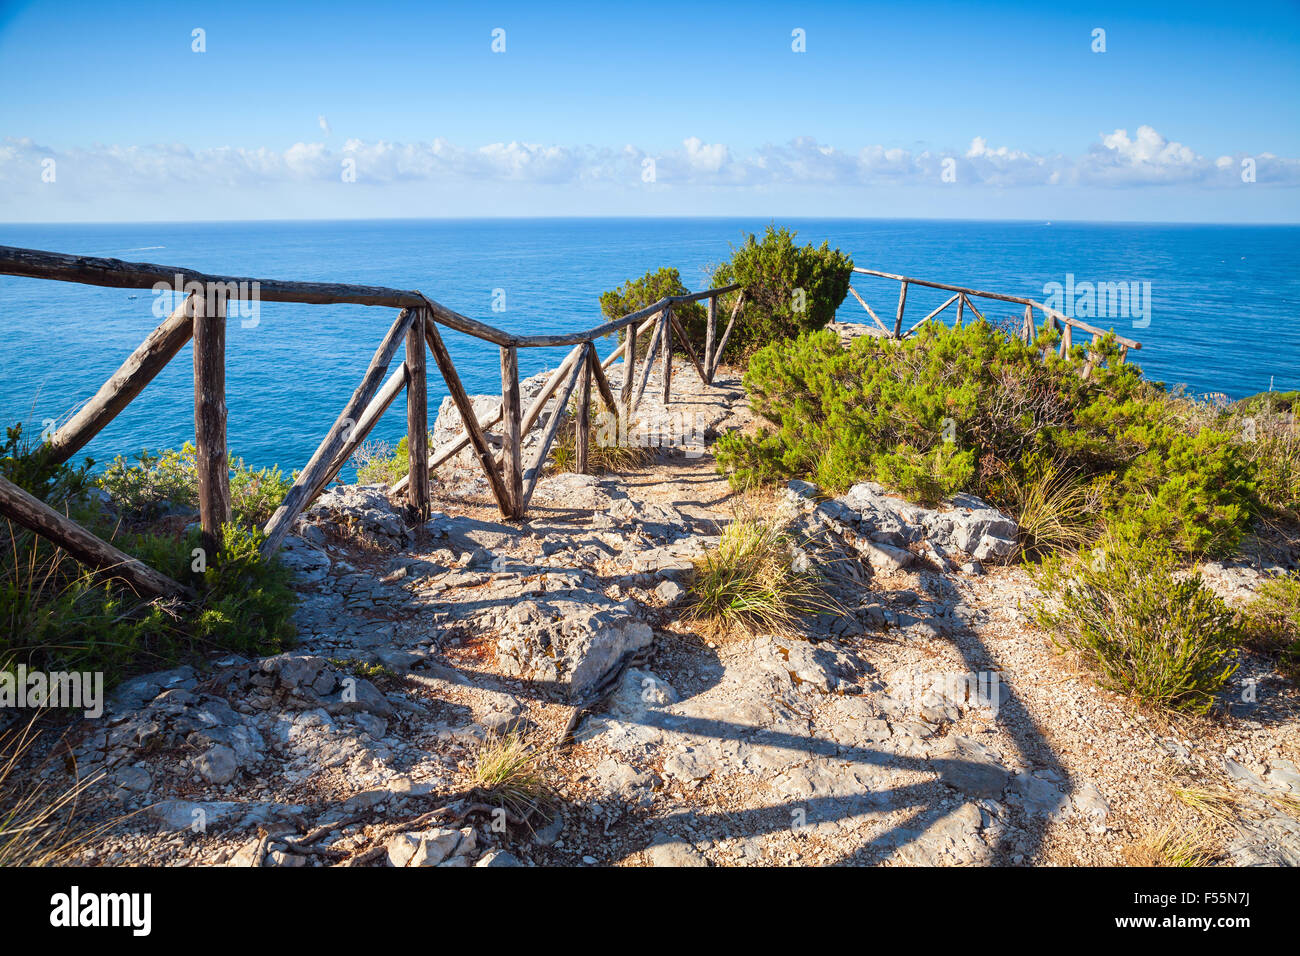 Holzgeländer auf felsigen Küste des Mittelmeeres, Gemeinde Gaeta, Italien Stockfoto